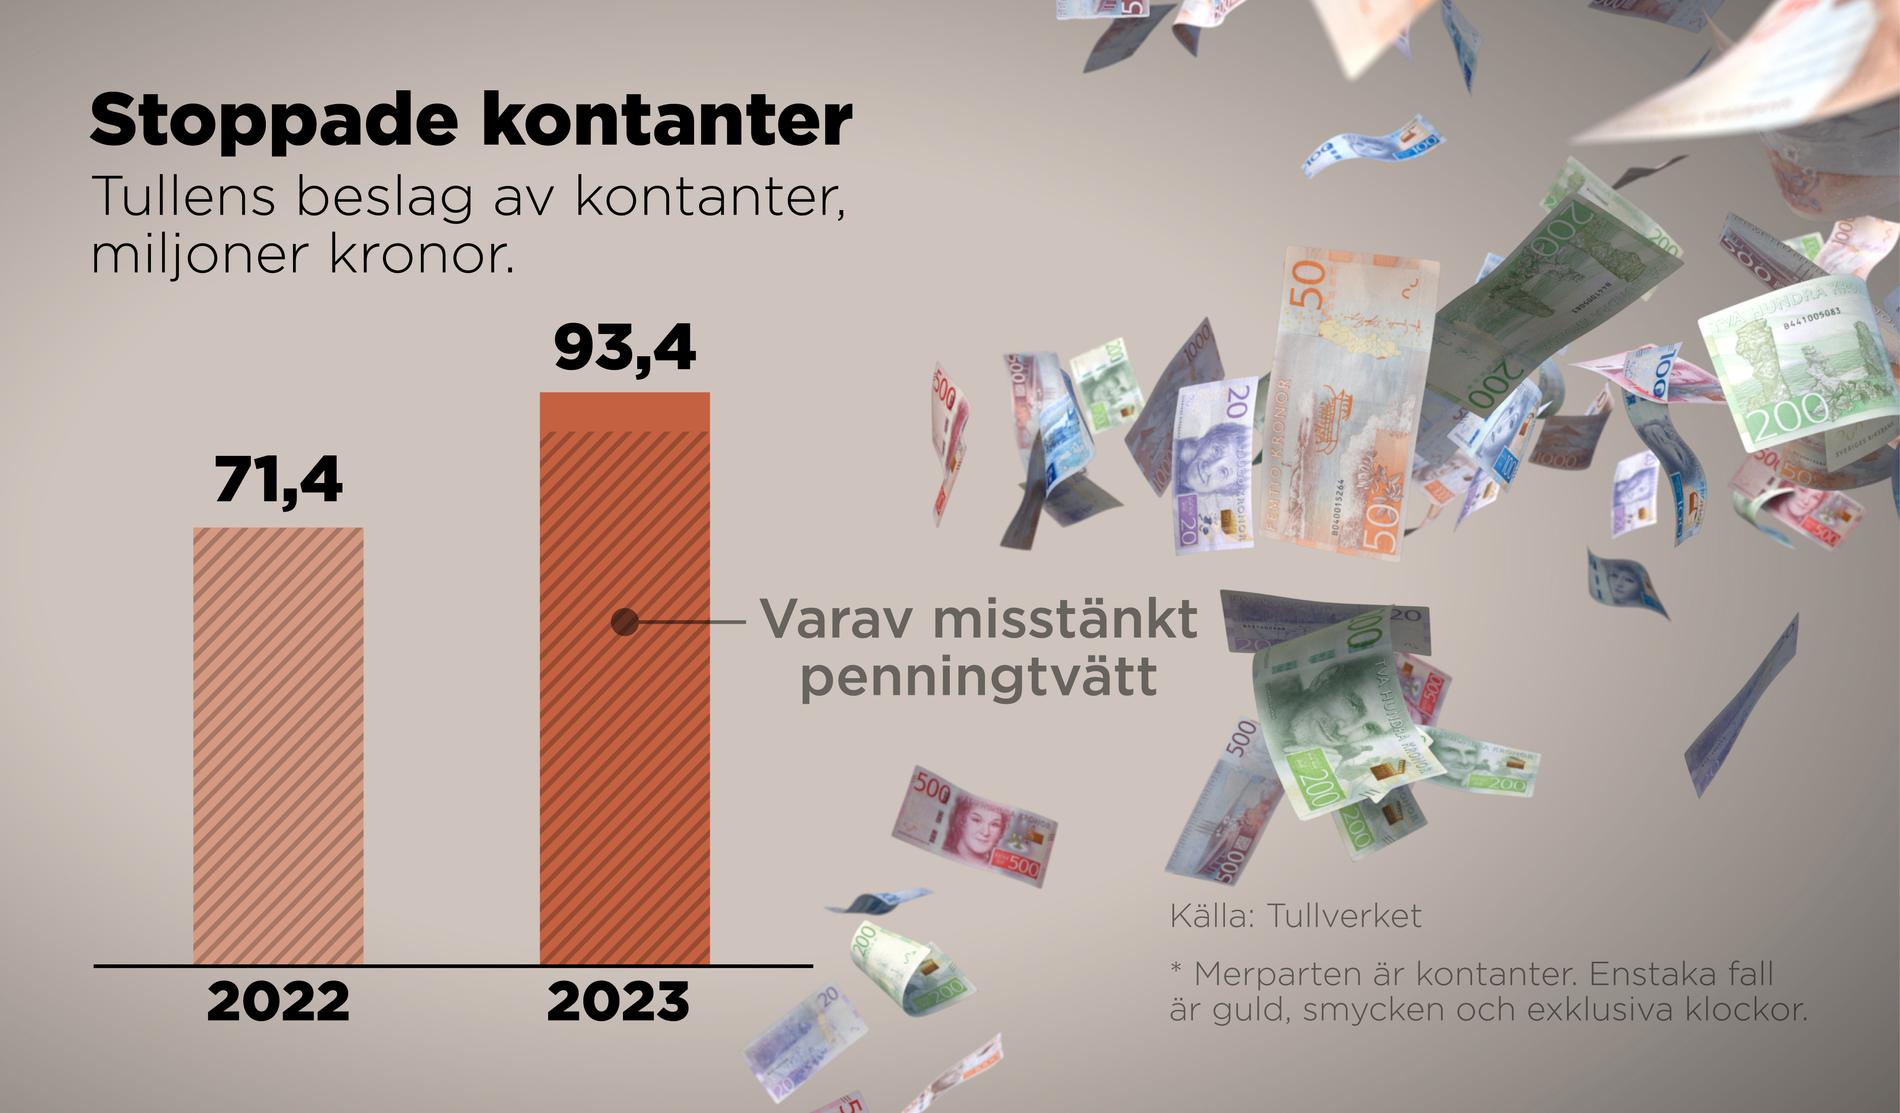 Tullens beslag av kontanter 2022 och 2023, miljoner kronor.